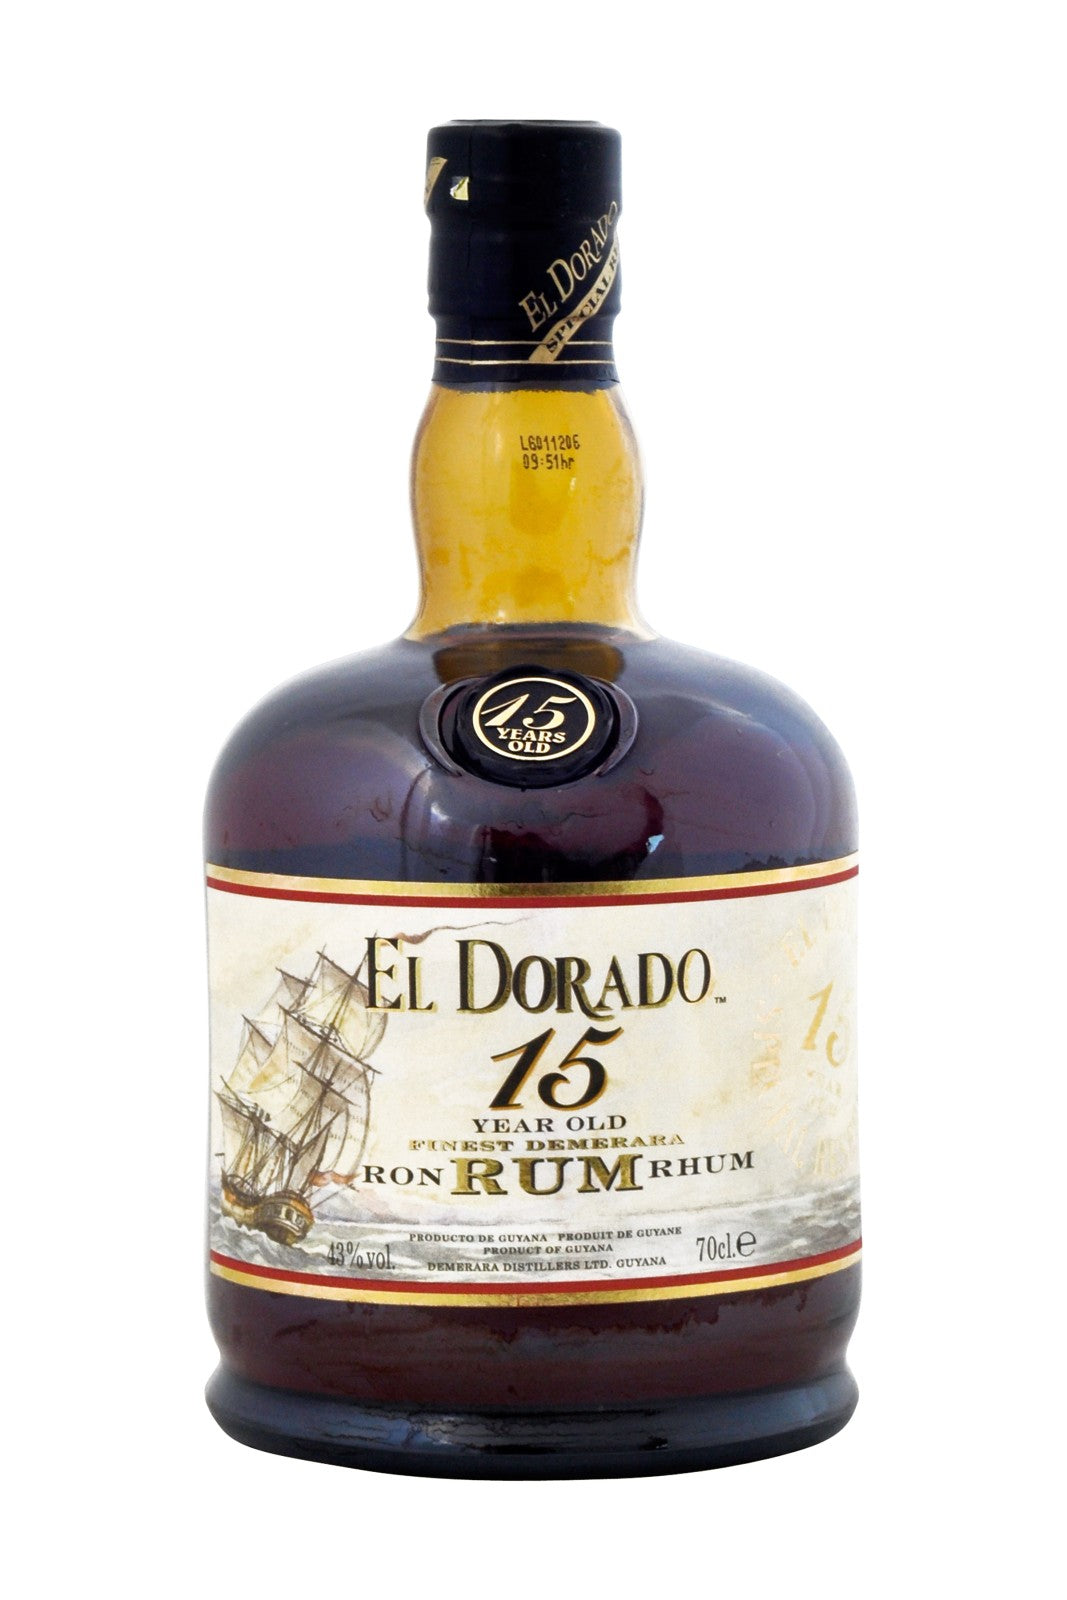 El Dorado 15 Year Old Rum